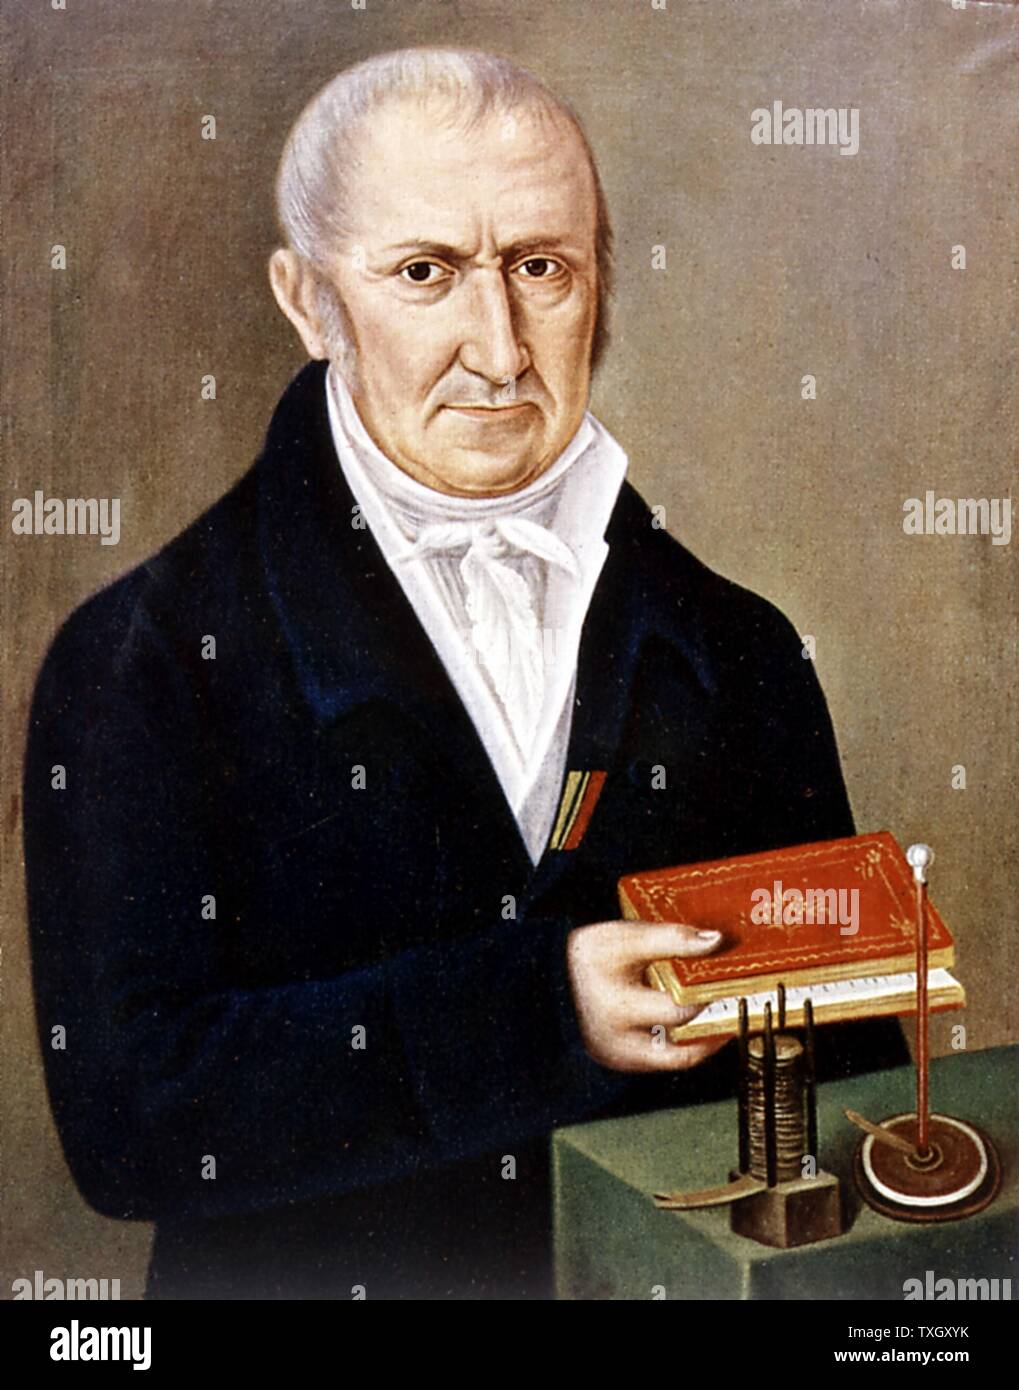 Alessandro Volta, italienischer Physiker. Auf dem Tisch sind zwei seiner Erfindungen, die Voltasche Säule (nassbatterie) auf der linken und electrophorus, einer Vorrichtung, die elektrostatische Aufladung durch Induktion. Seinen Namen Einheit der elektrischen Potentialdifferenz gegeben. Stockfoto